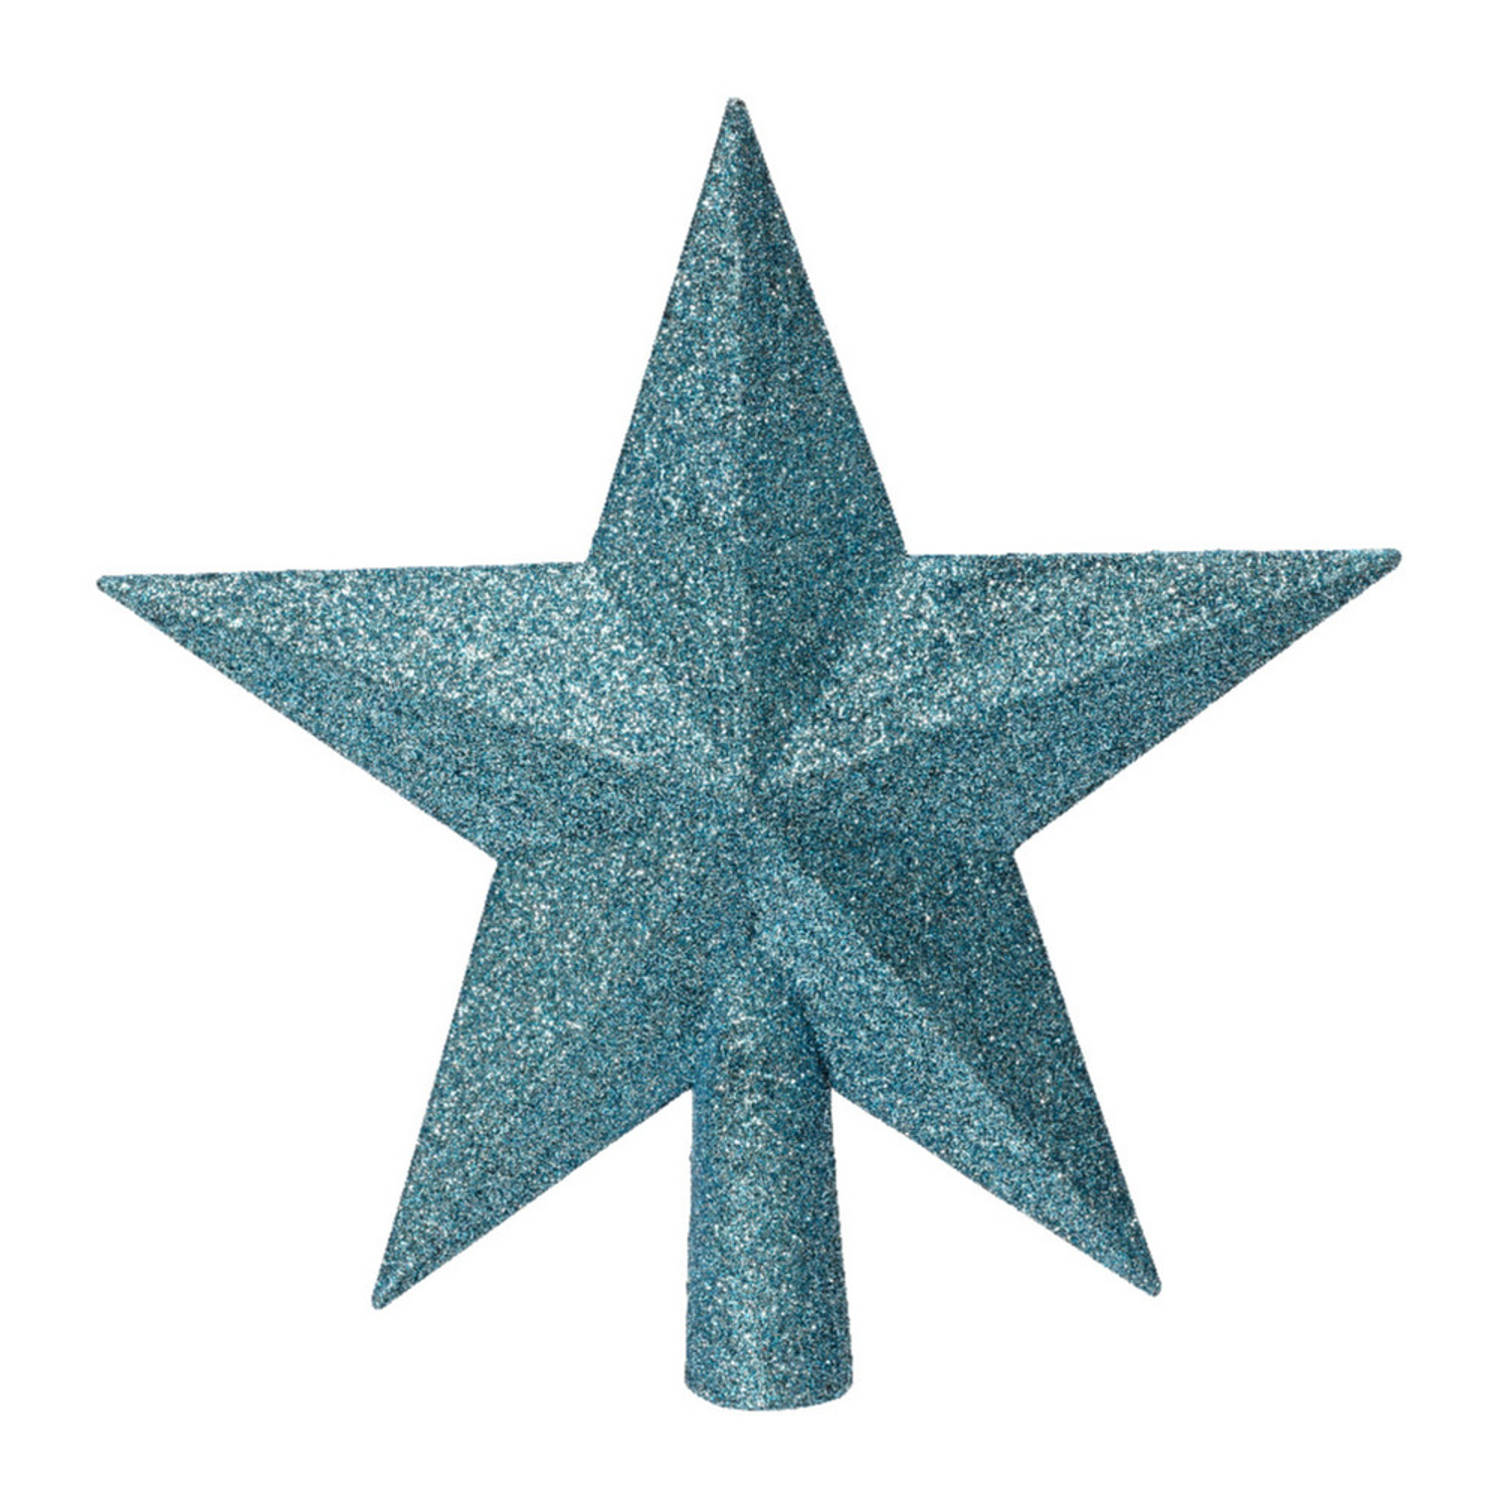 Decoris piek ster vorm kunststof ijs blauw 19 cm kerstboompieken